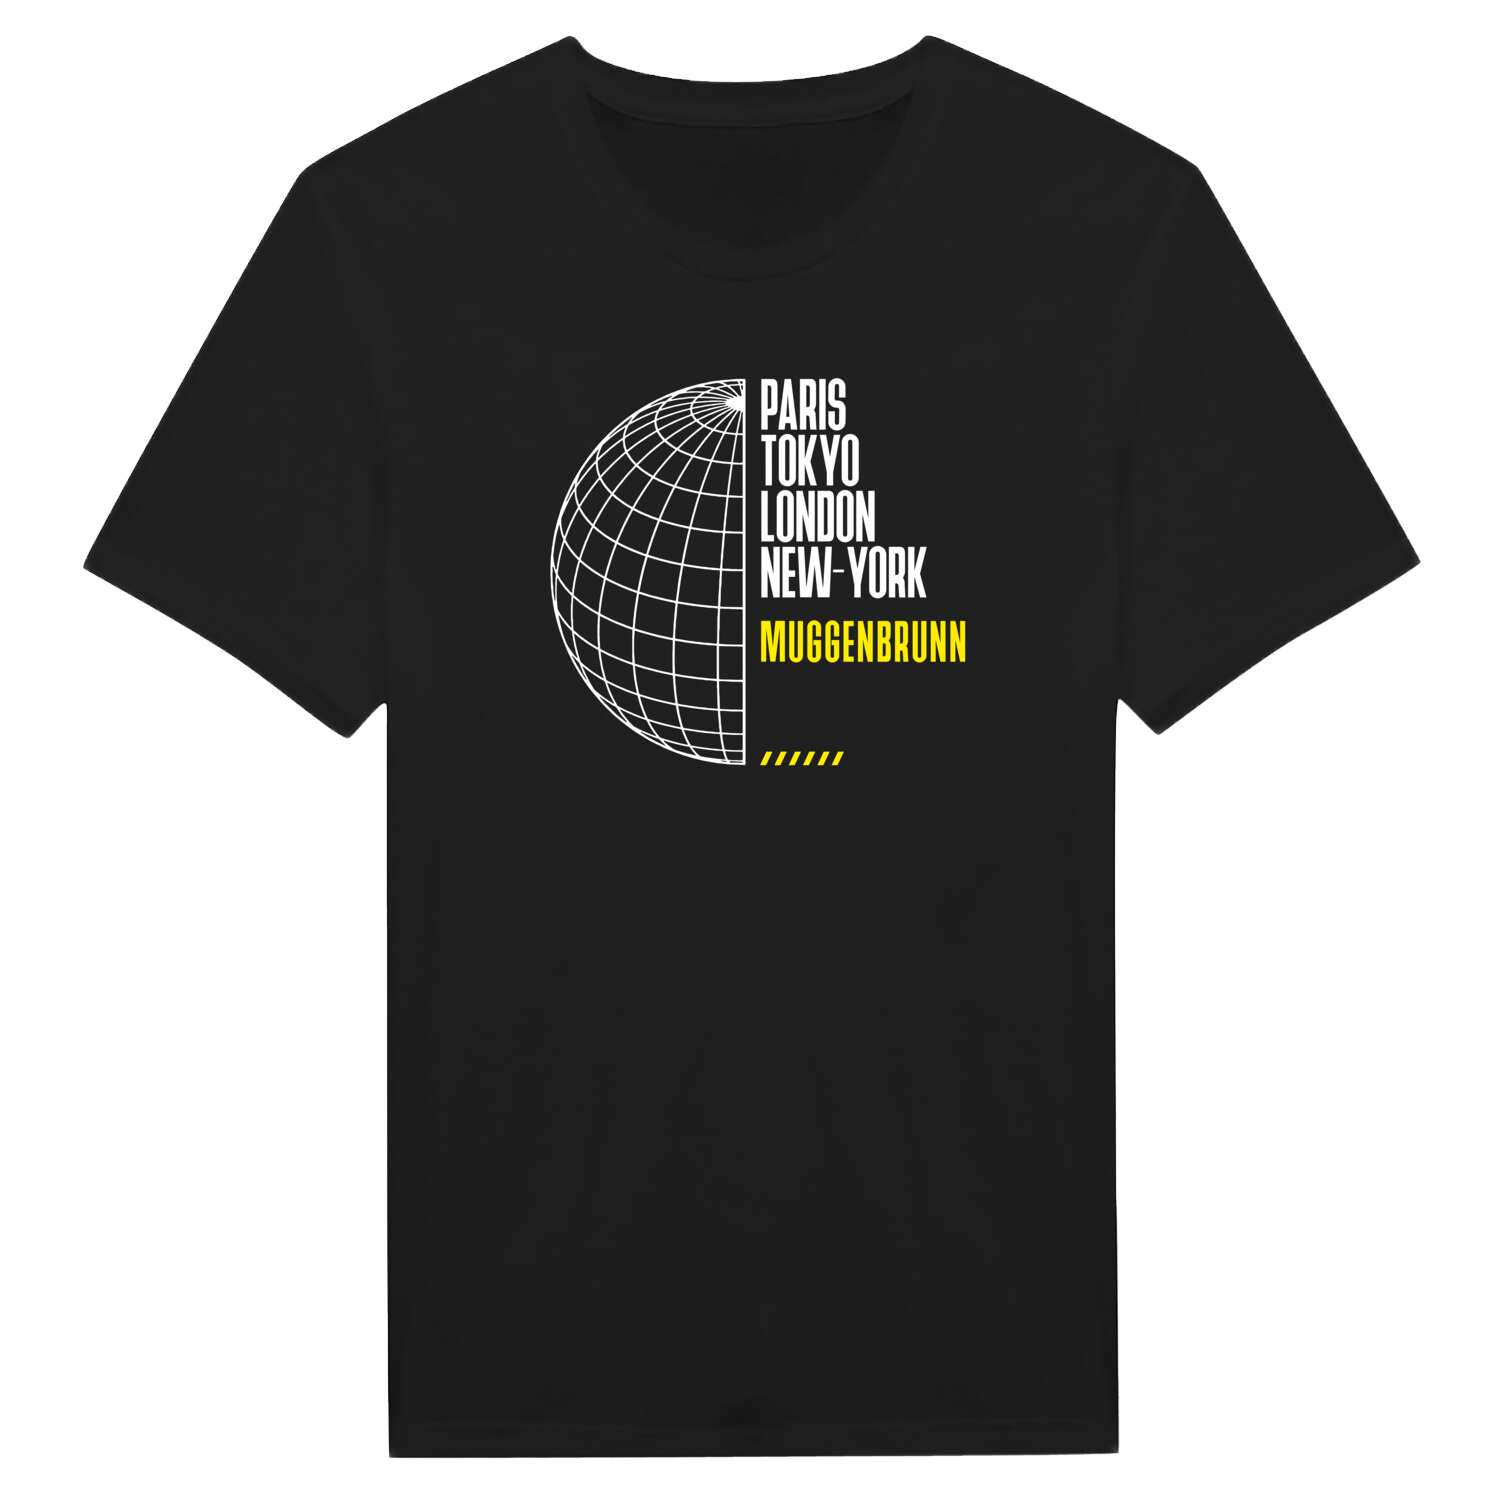 Muggenbrunn T-Shirt »Paris Tokyo London«